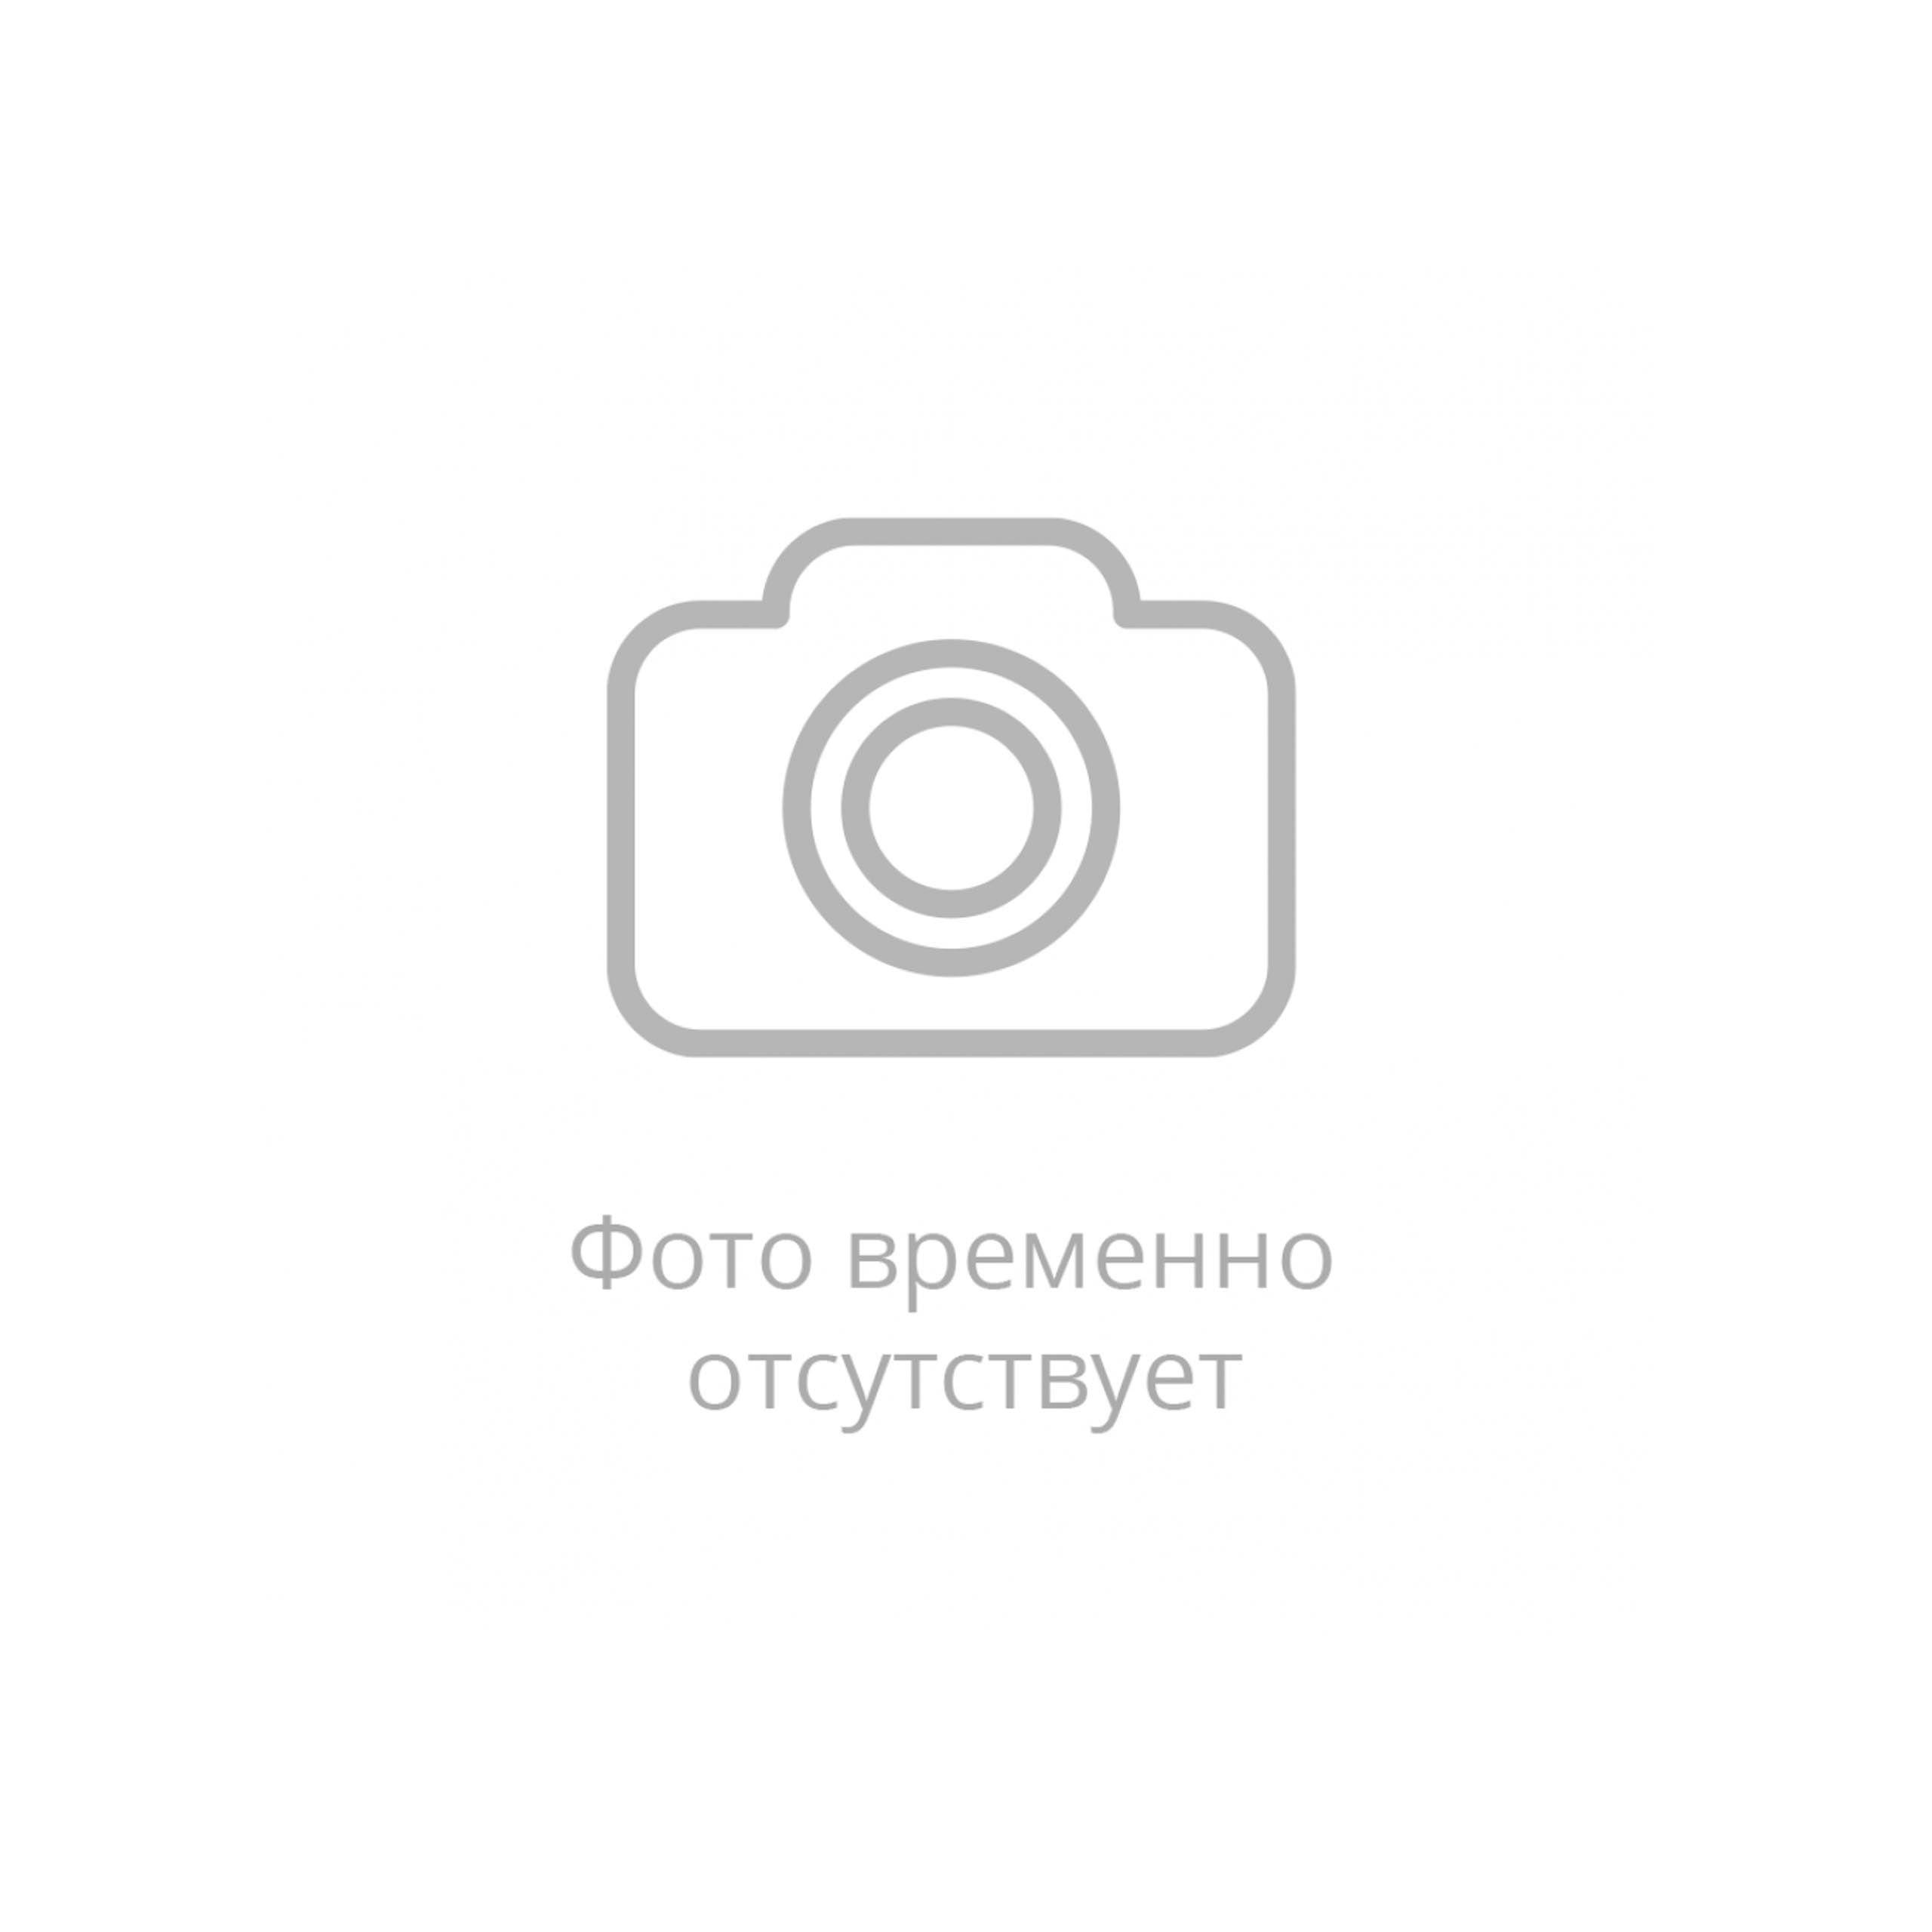 Рукав плоскосворачиваемый PVC Ф 20 мм Санкт-Петербург